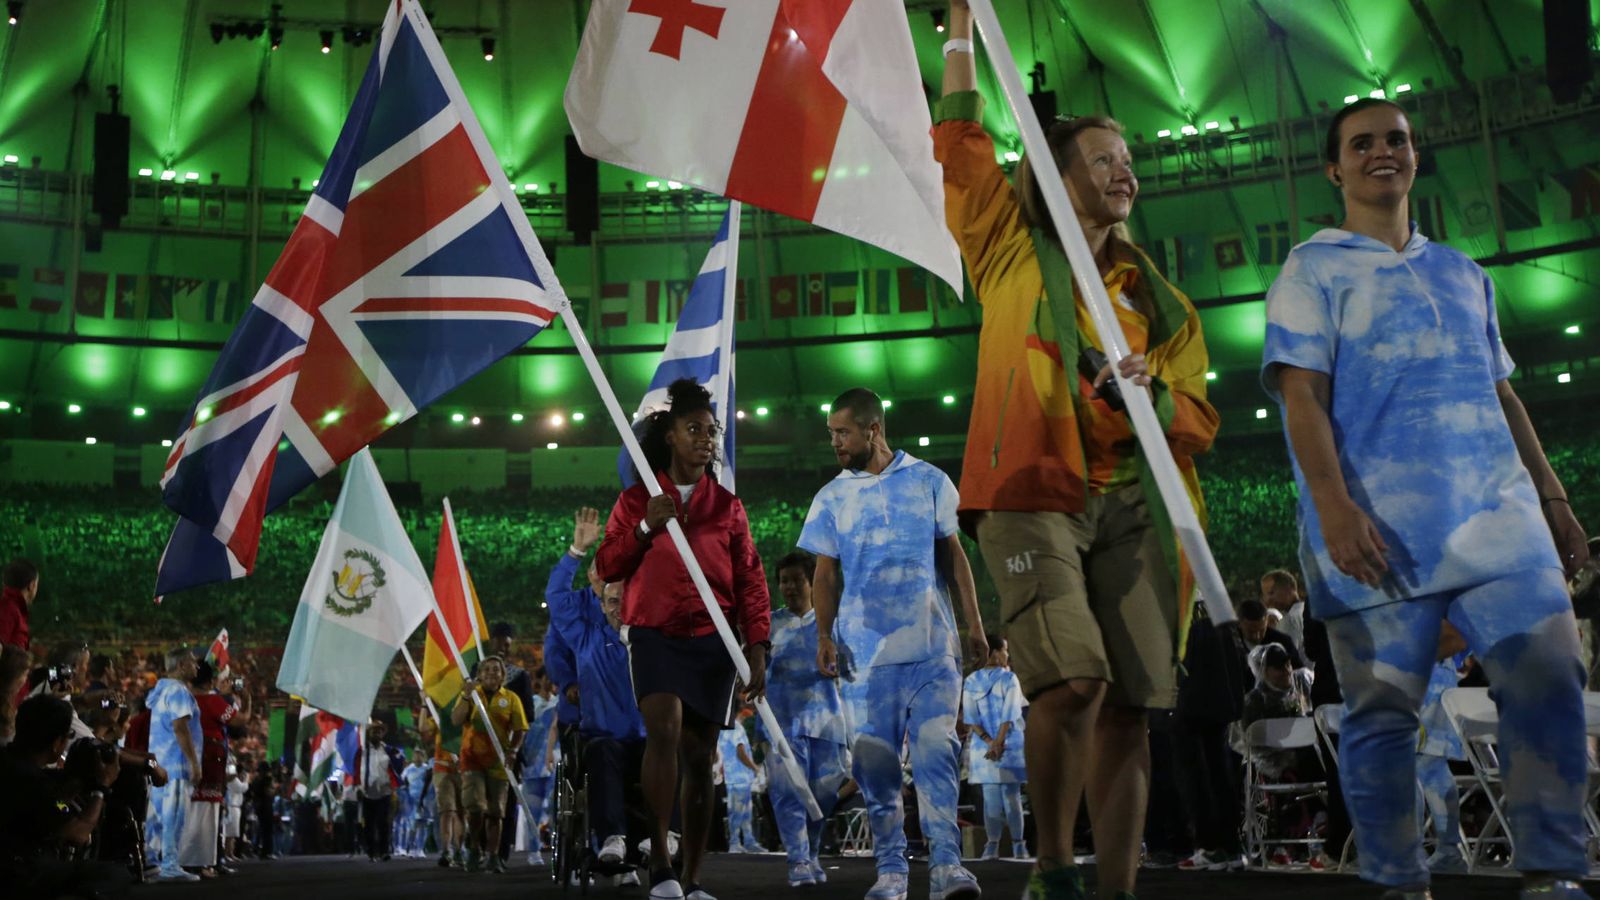 Foto: Banderas y países hay muchos, pero no somos muy originales poniendo nombres. (Reuters)